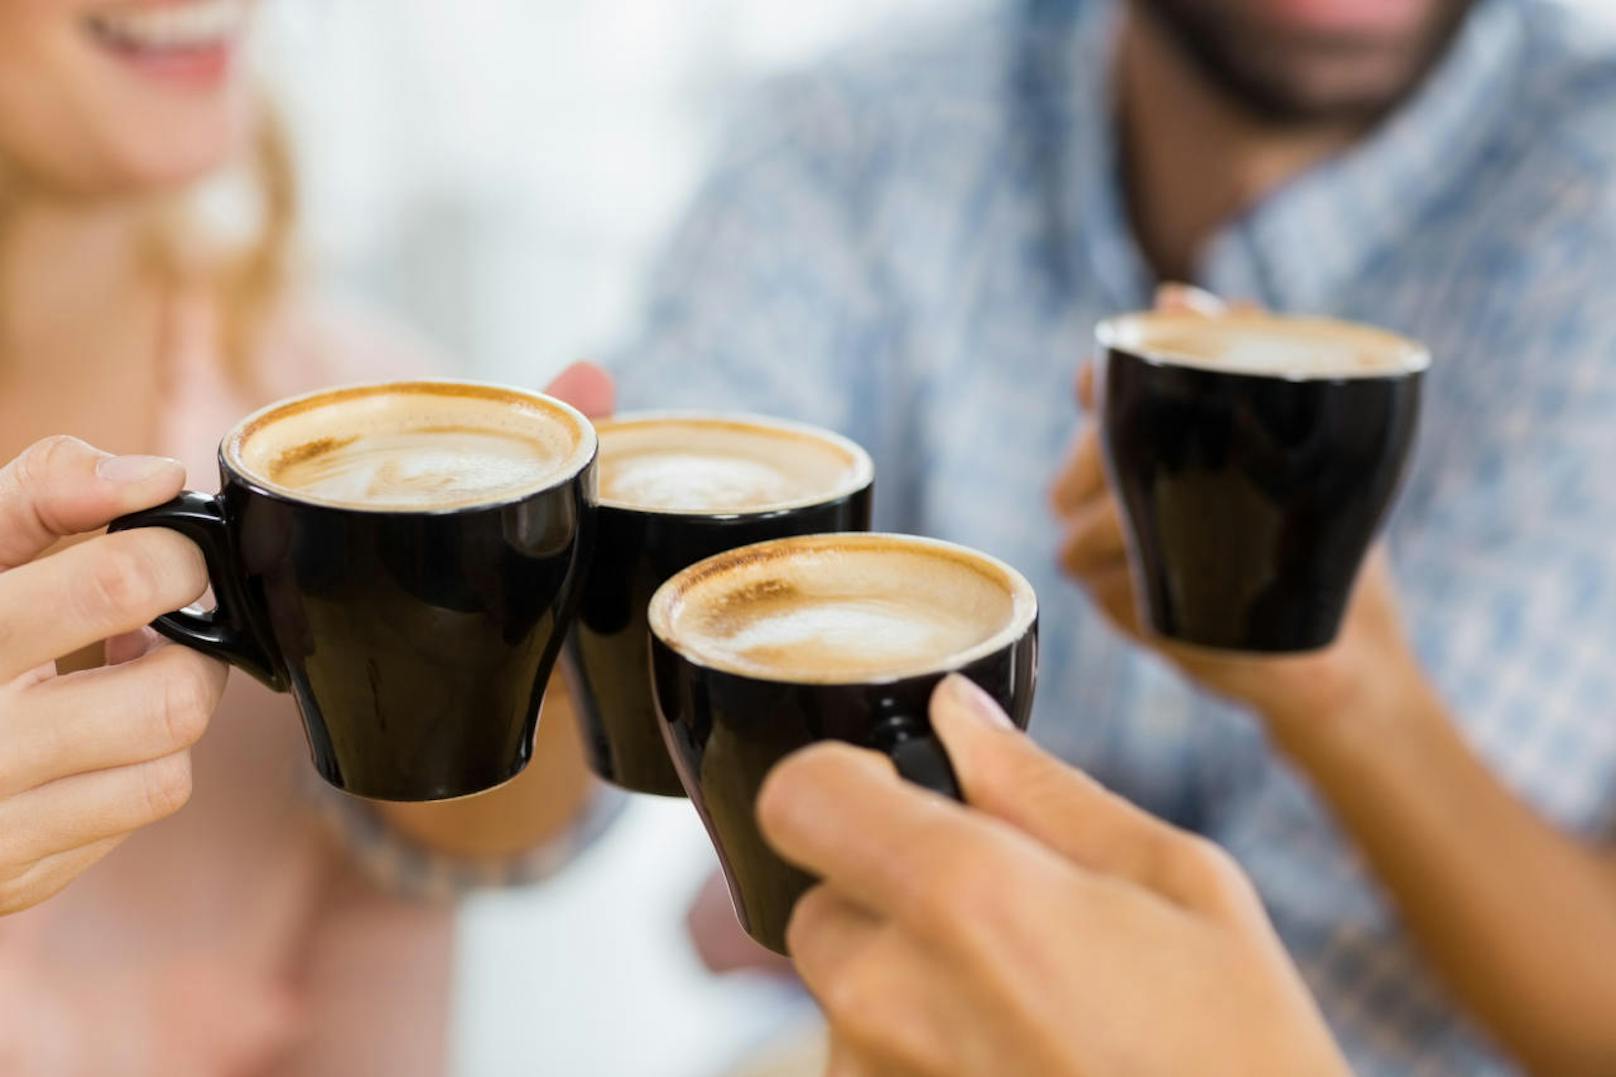 Auch Parkinson, Depression oder Demenz treten bei moderaten Kaffeetrinkern seltener auf. Weitere wichtige Erkenntnis der Übersichtsstudie: Wer mehr trinkt, schadet sich nicht. Lediglich die positiven Effekte sind weniger stark ausgeprägt.